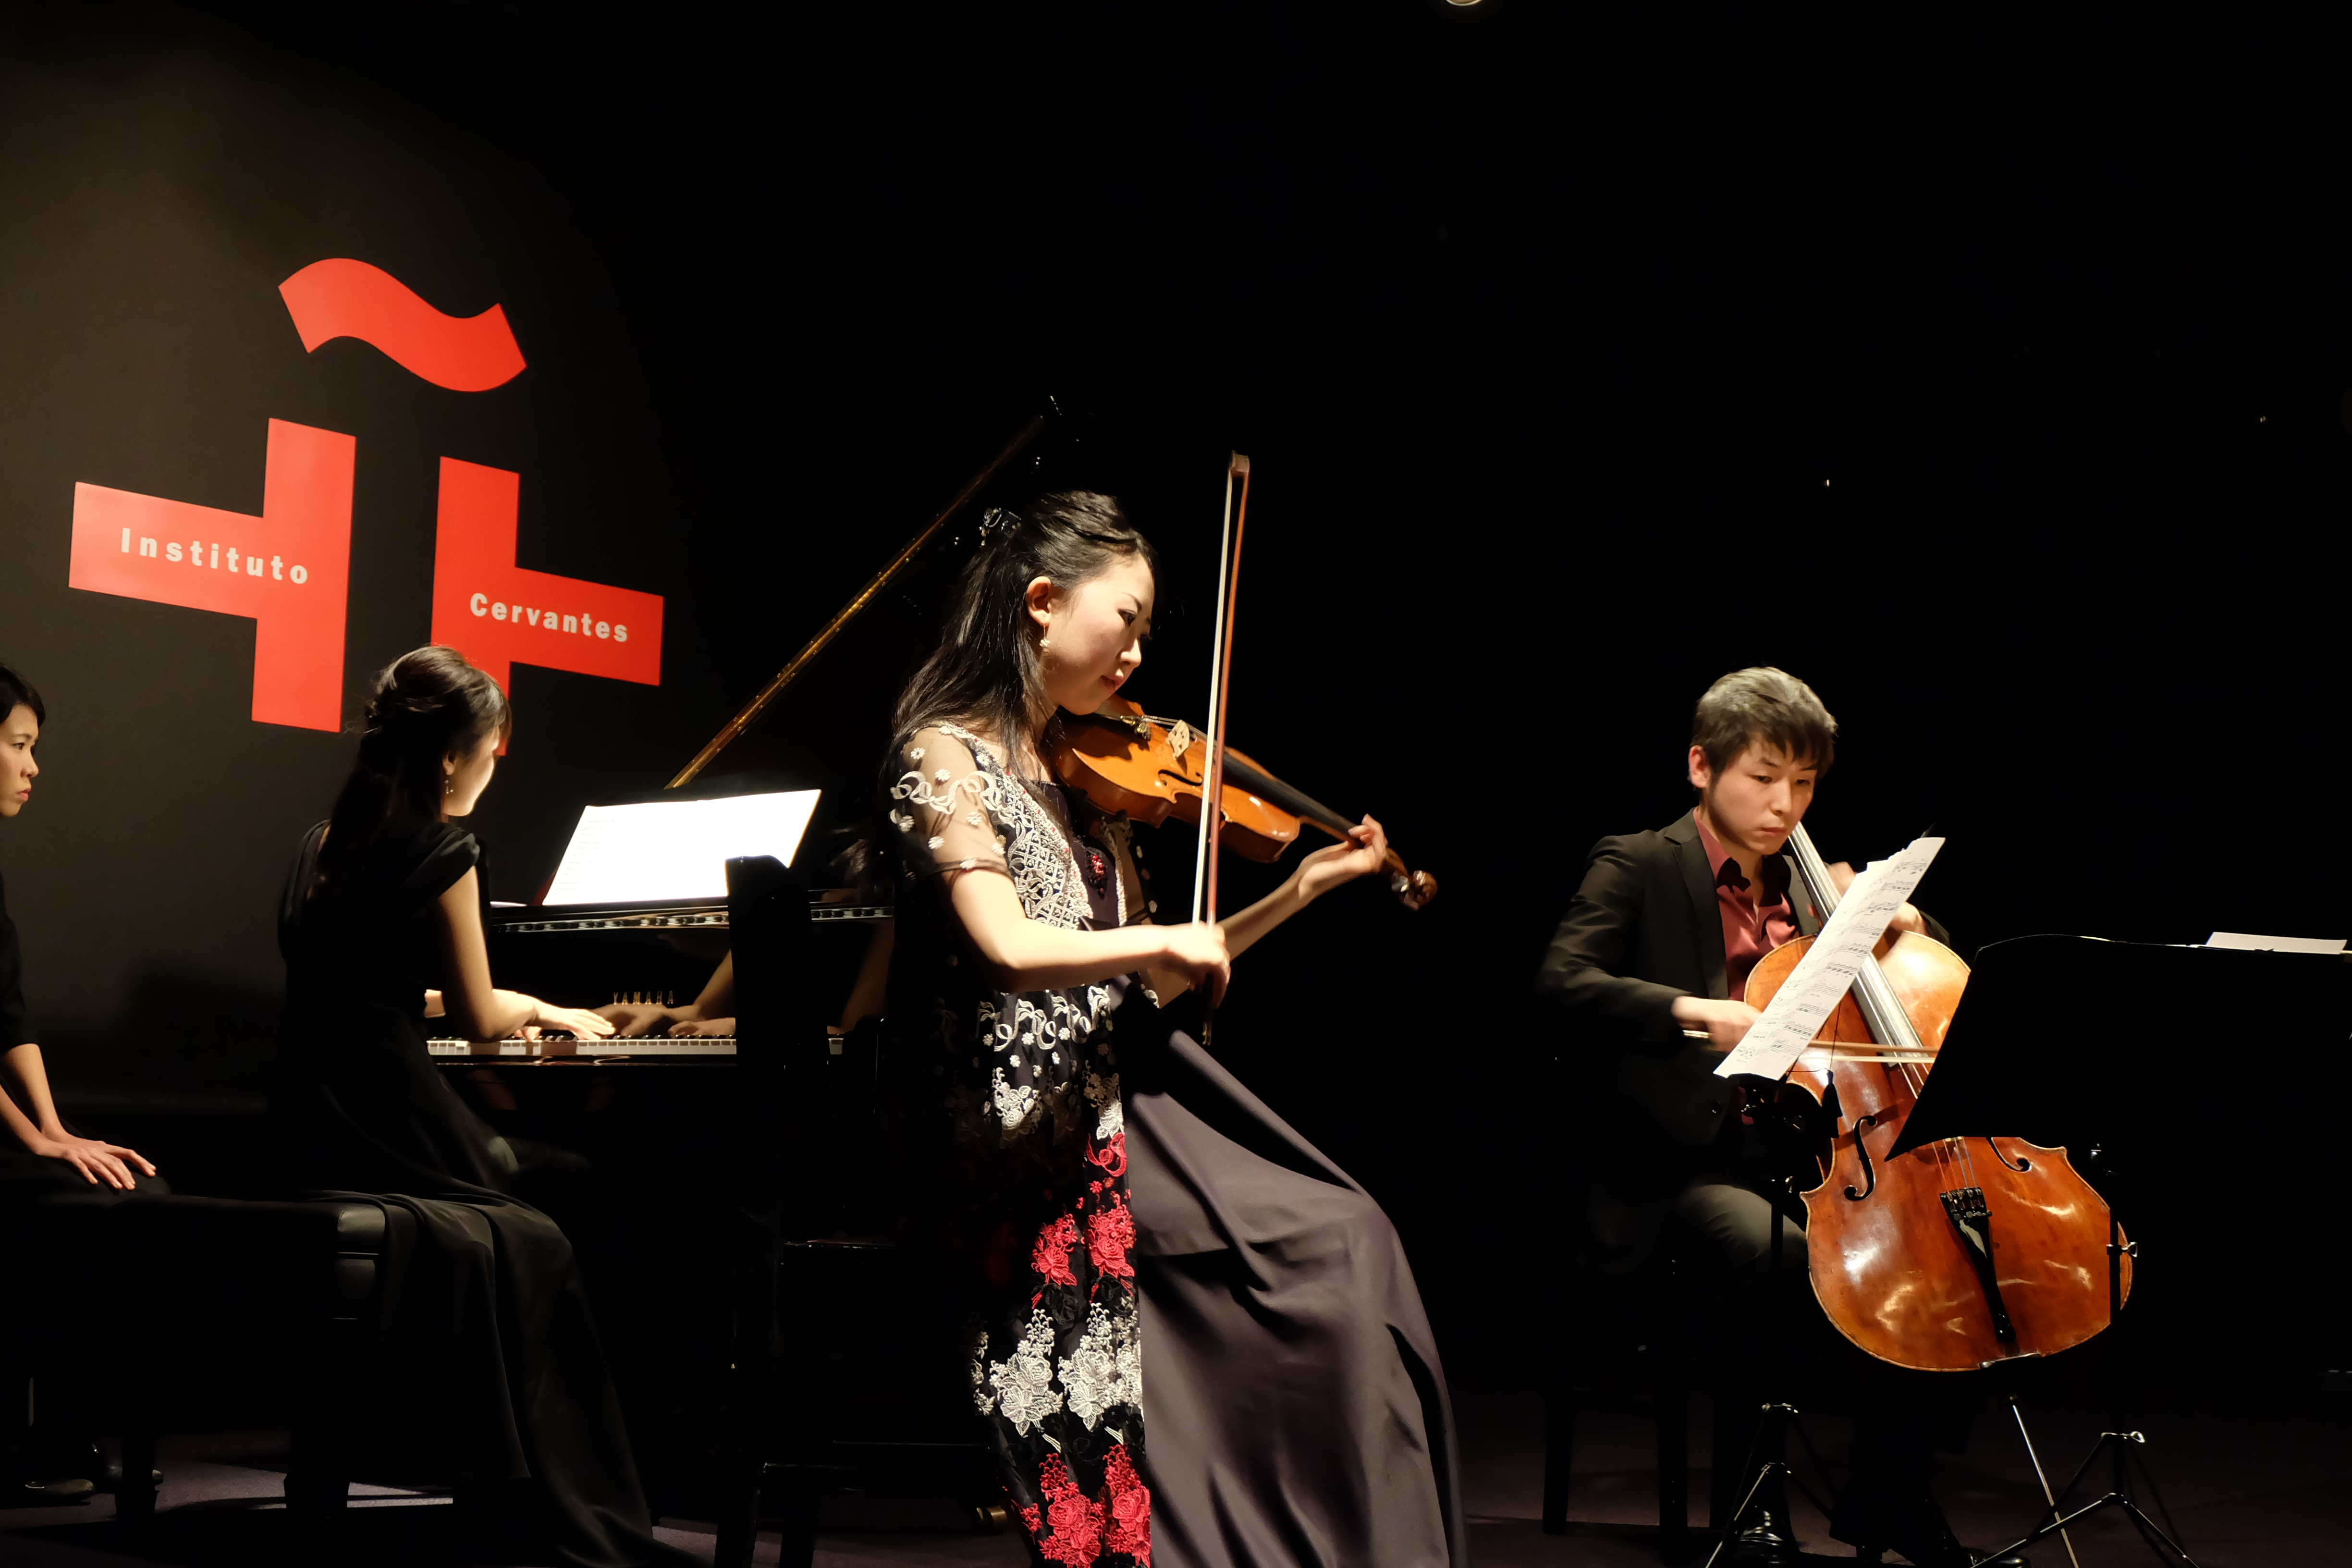 La Embajada de Colombia en Japón realizó un concierto de música clásica colombiana en el Instituto Cervantes de Tokio